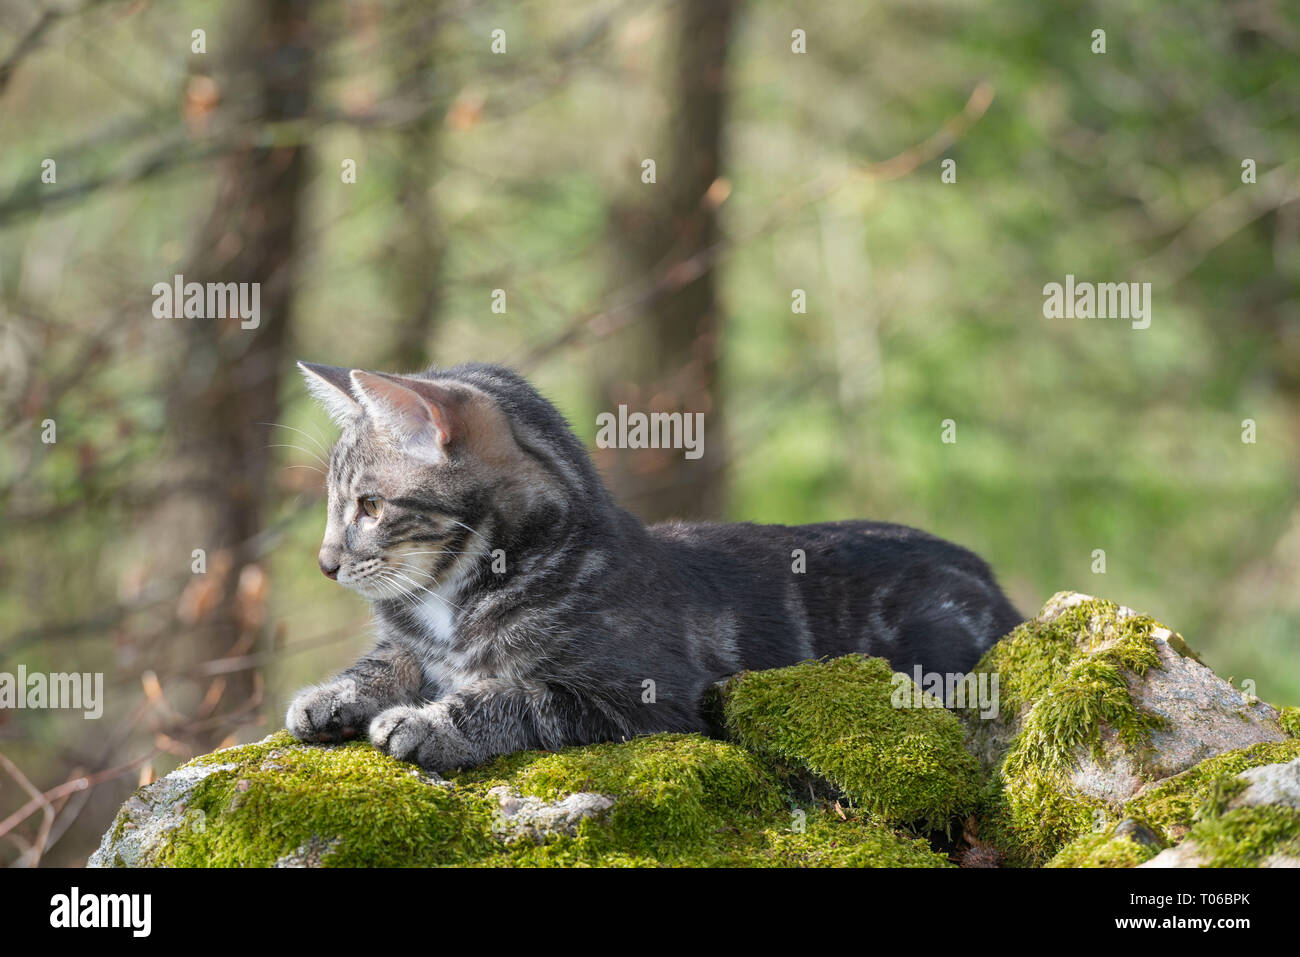 Un giovane gatto grigio giace su un muschio coperto Muro di pietra a secco che parte in avanti Foto Stock